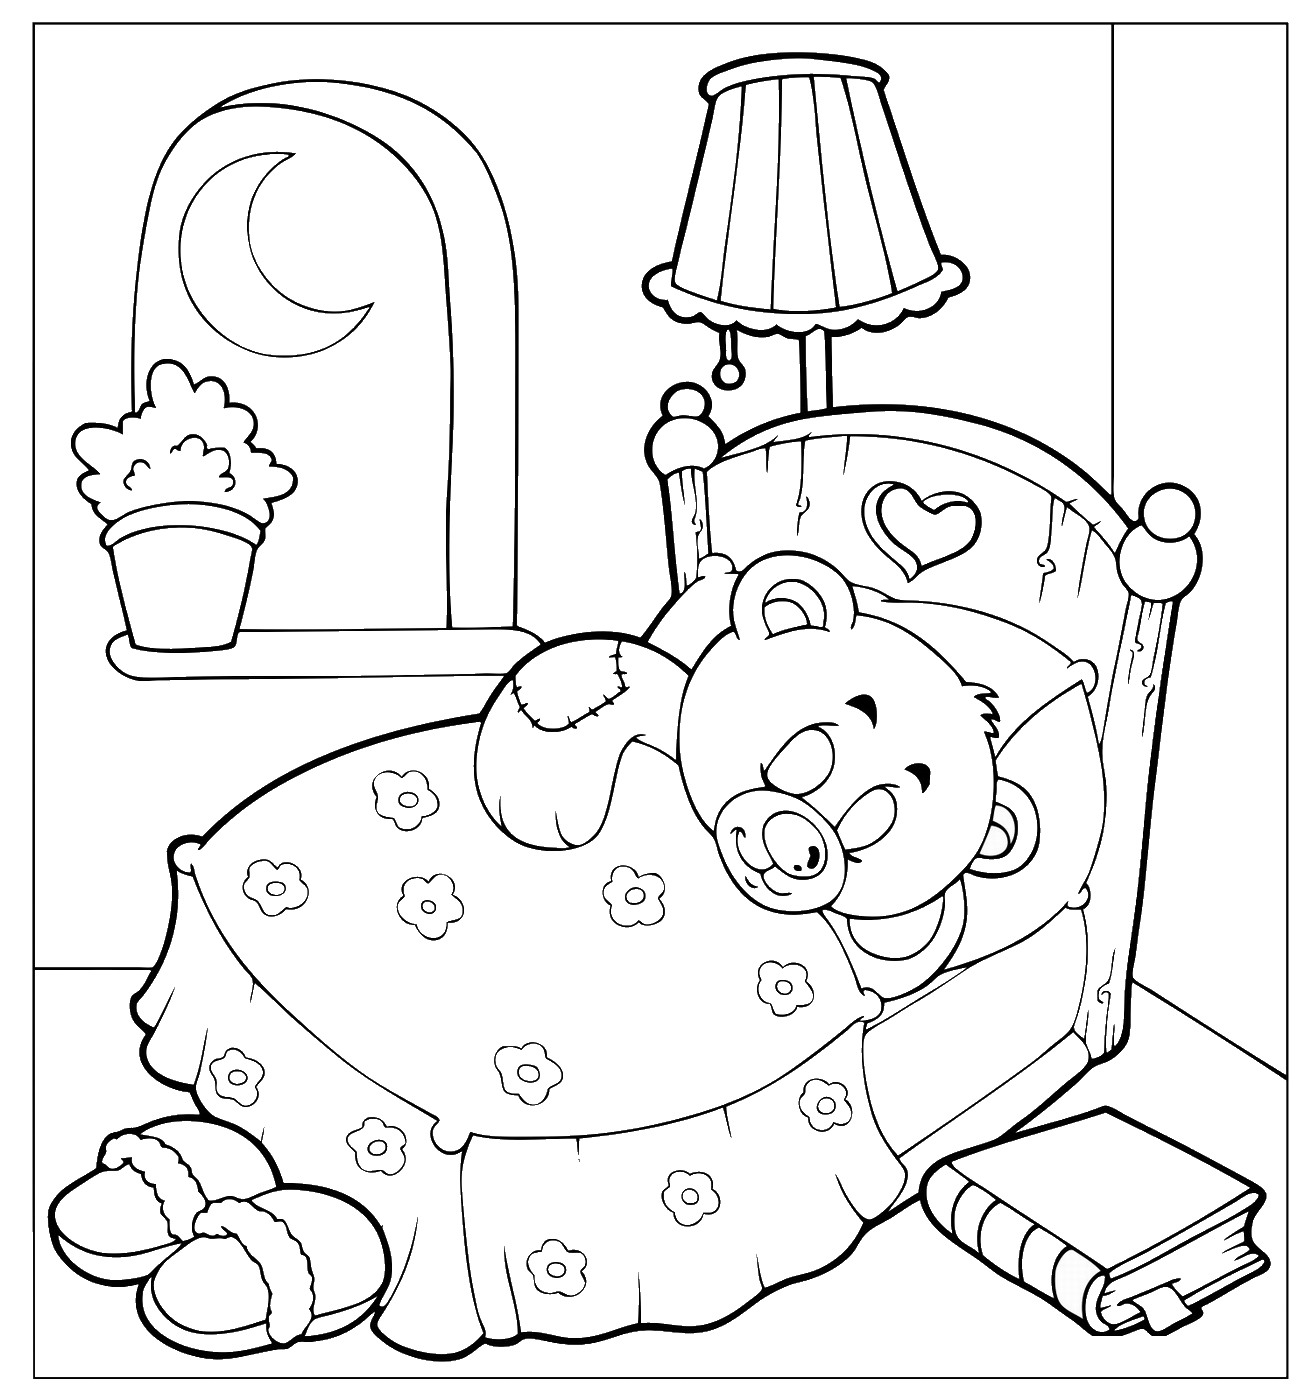 Preschool Coloring Pages Sleeping Bear